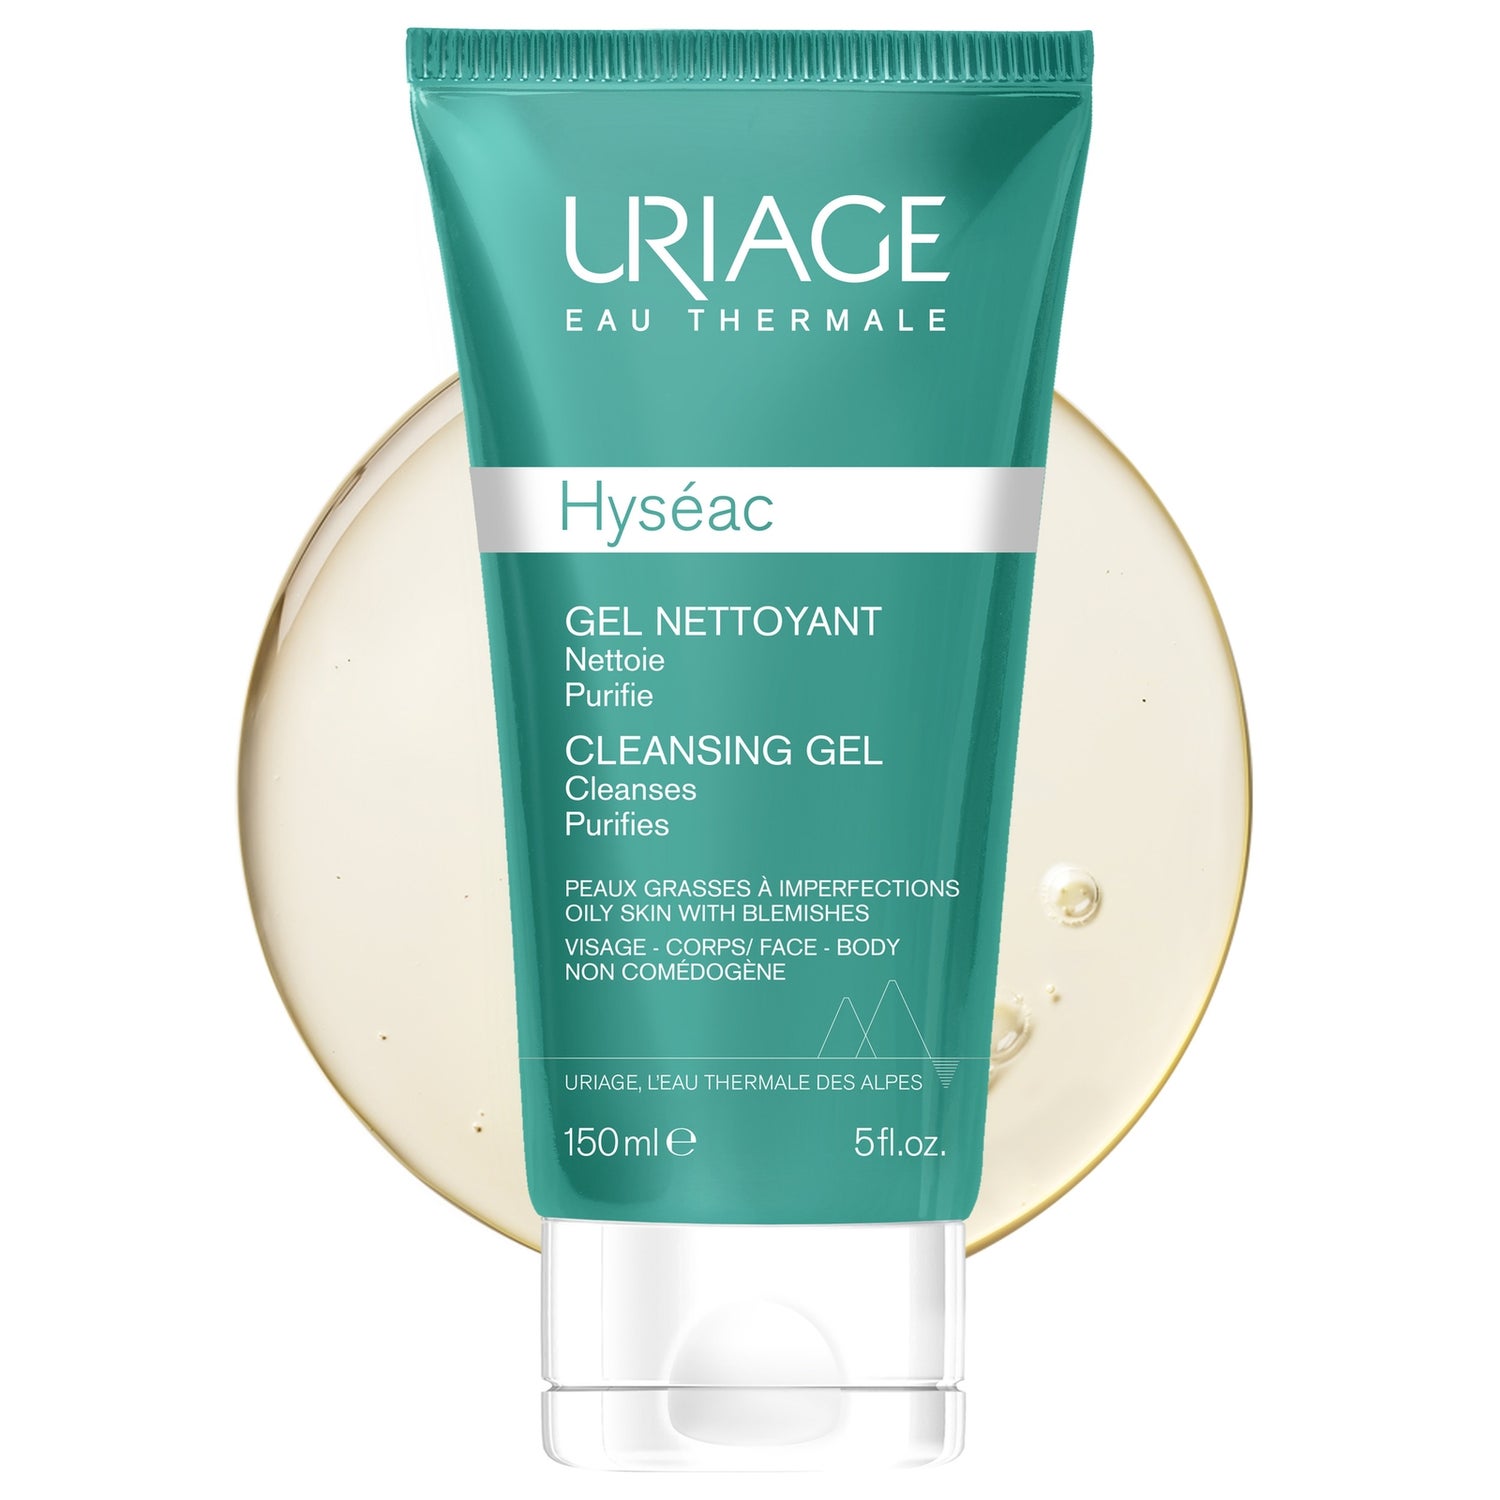 URIAGE Hyseac Cleansing Gel 5 fl.oz